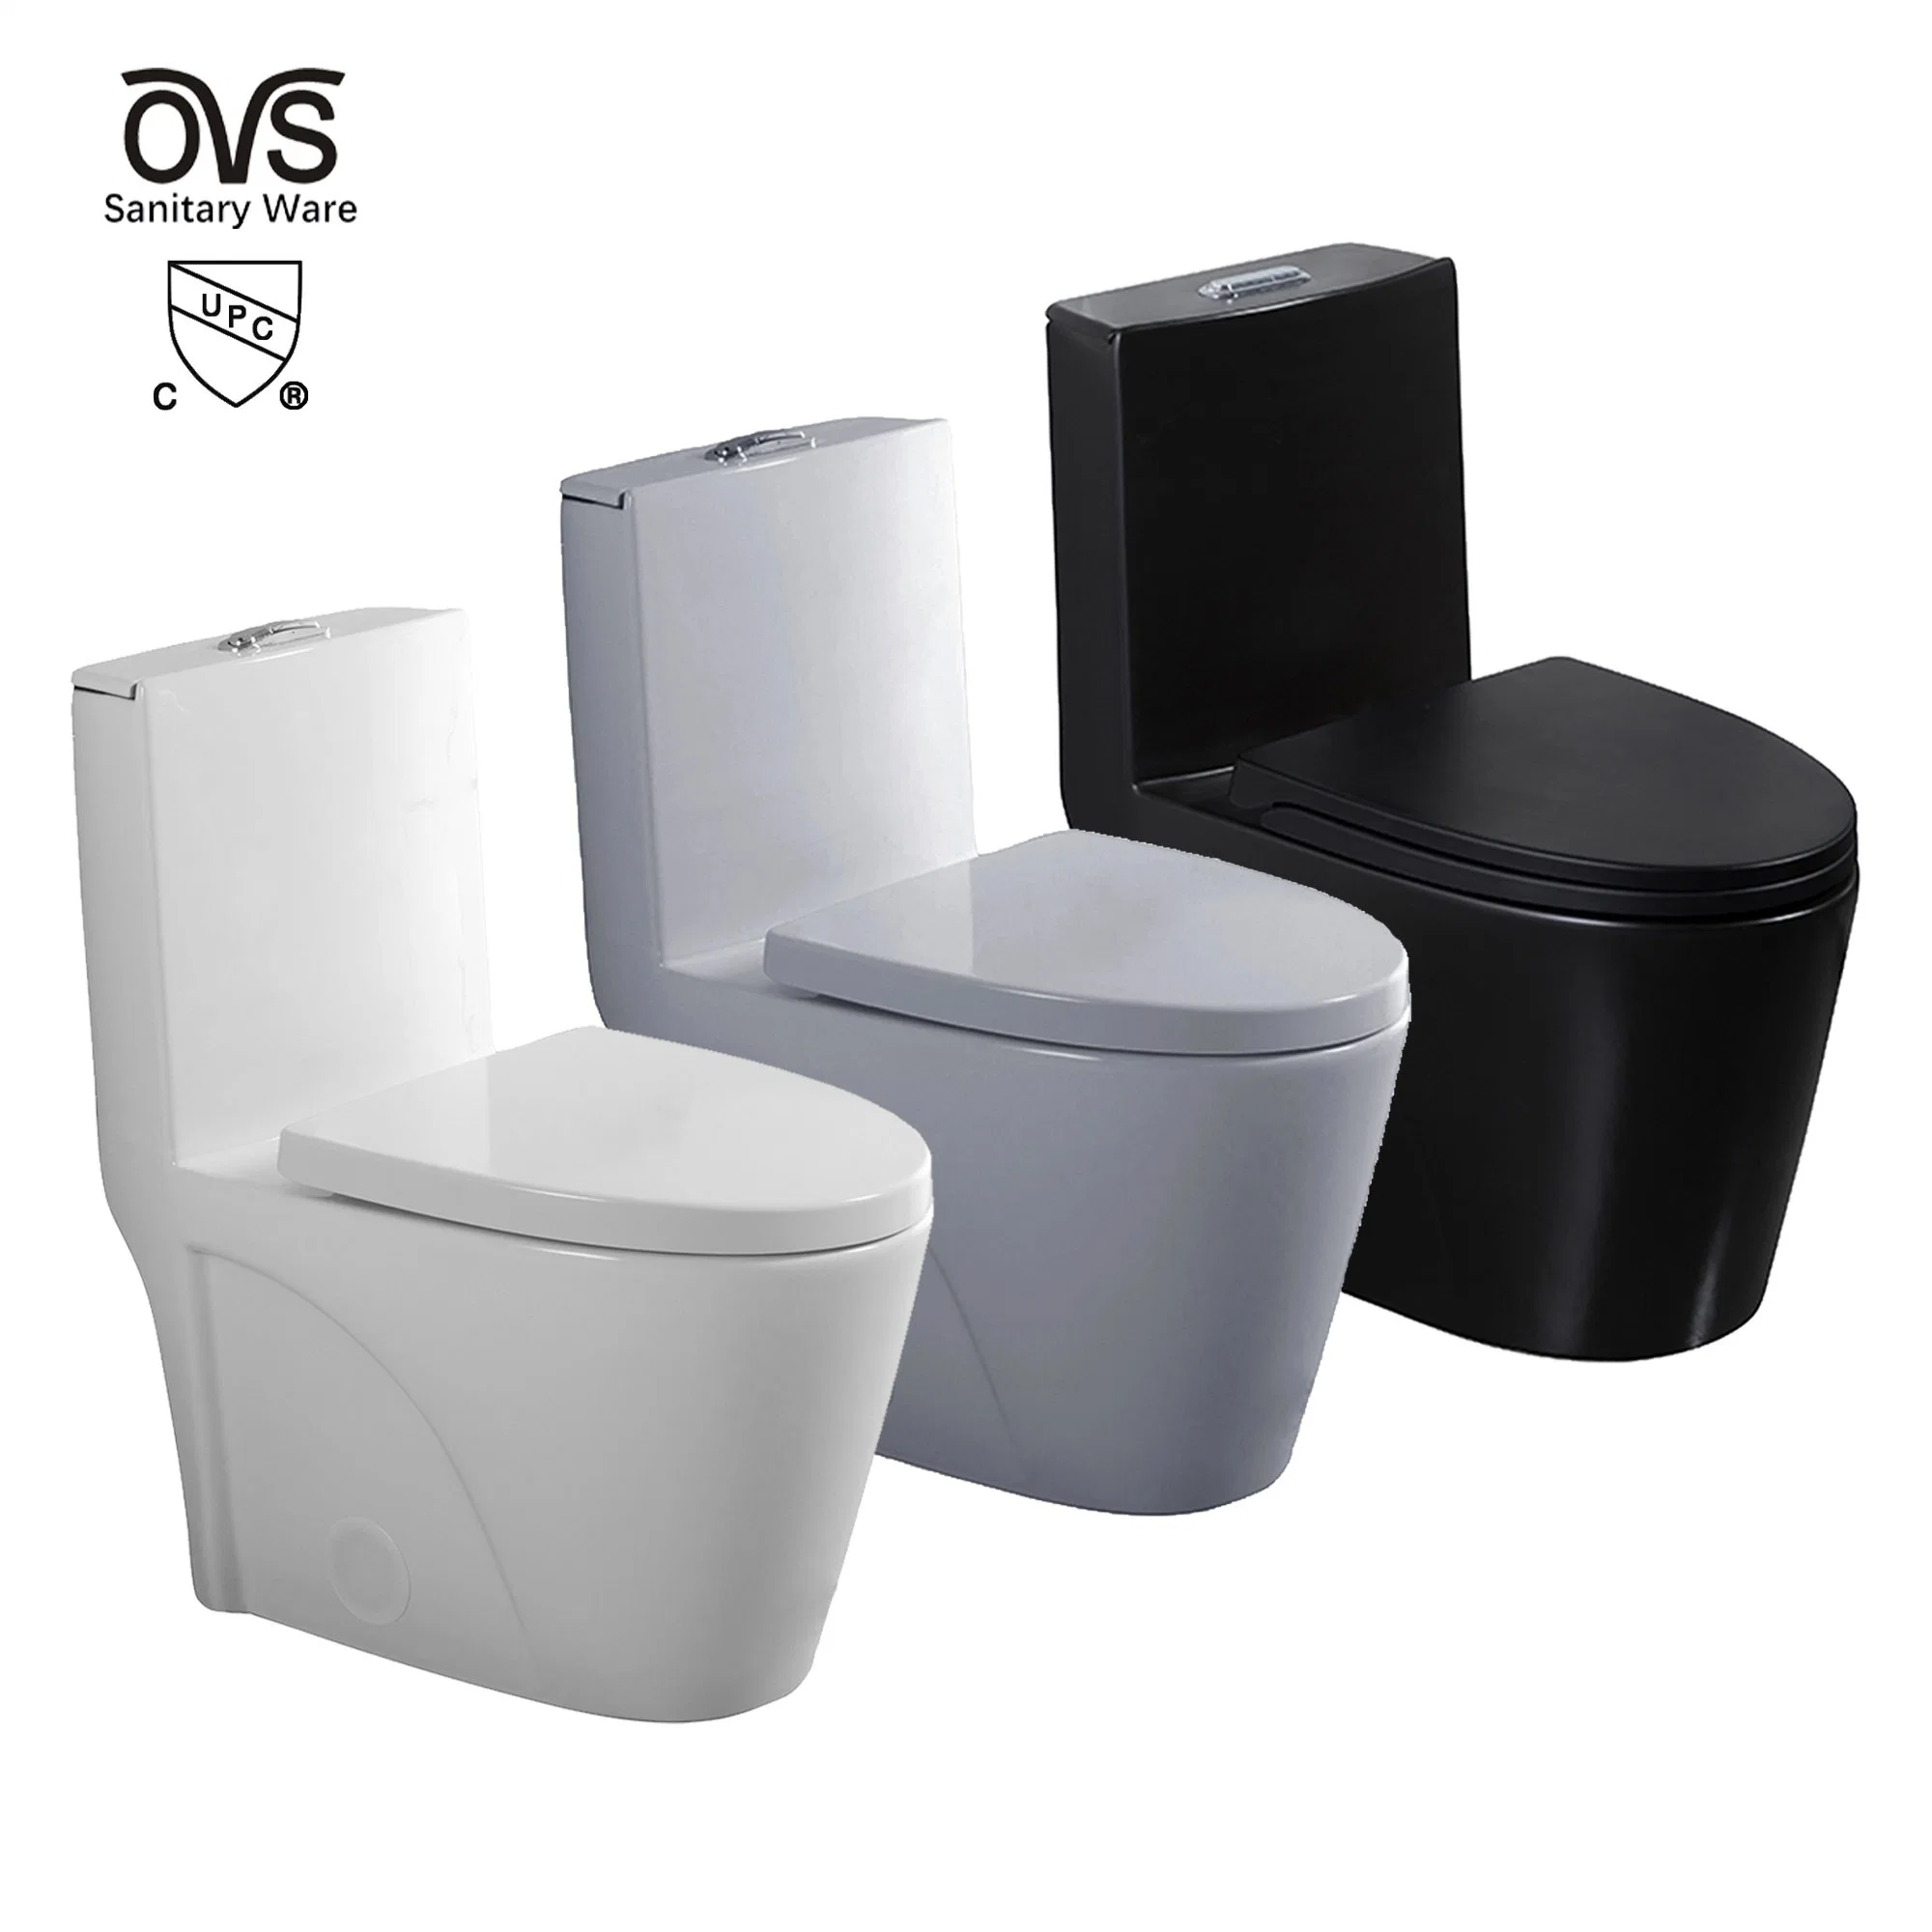 OVS CUPC Amérique du Nord salle de bains céramique une pièce WC chinois Toilettes de luxe sanitaire de luxe commode standard de toilette noire